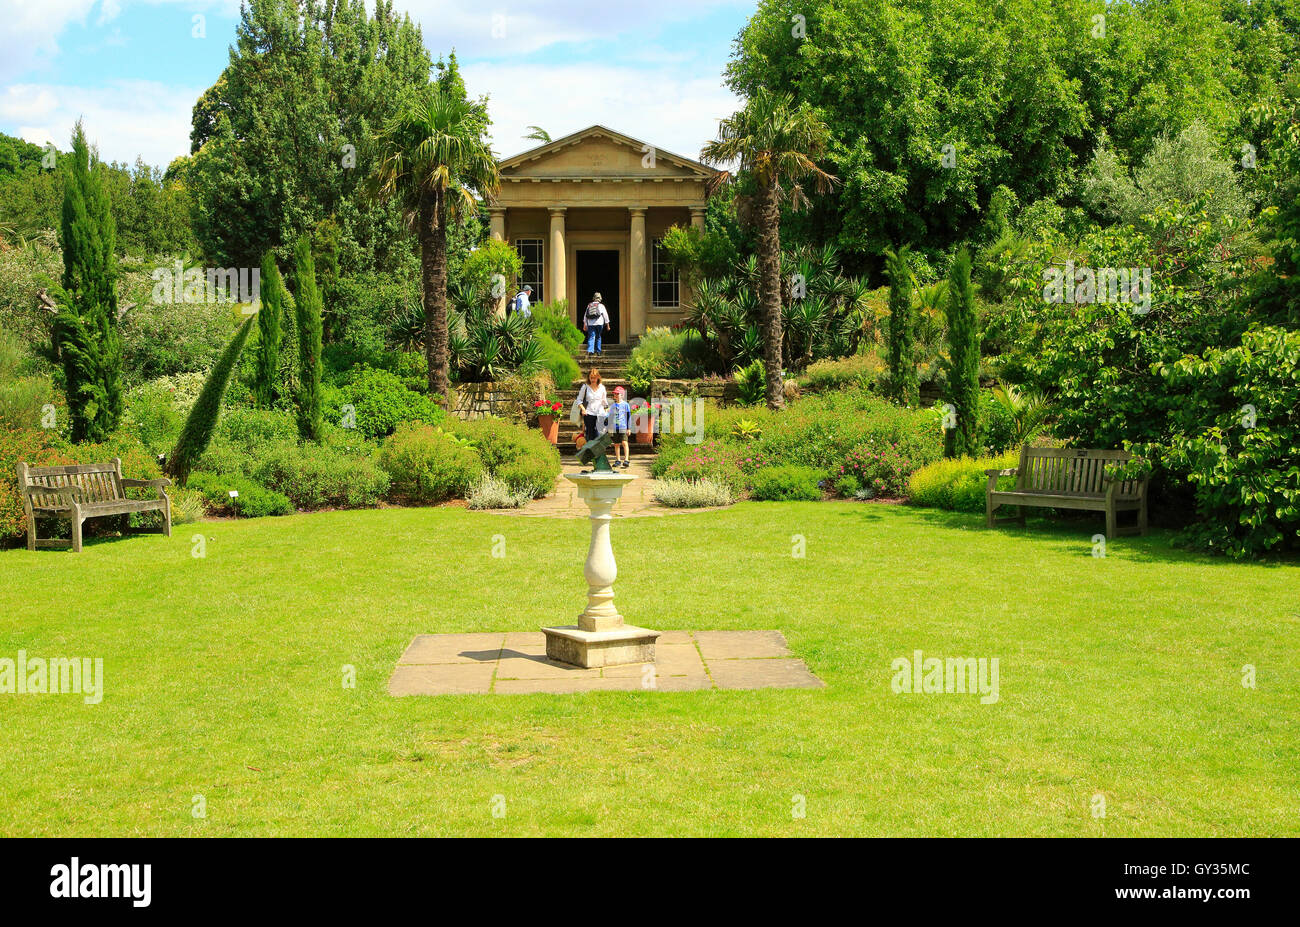 König William Temple und mediterranen Garten, Royal Botanic Gardens, Kew, London, England, Vereinigtes Königreich Stockfoto